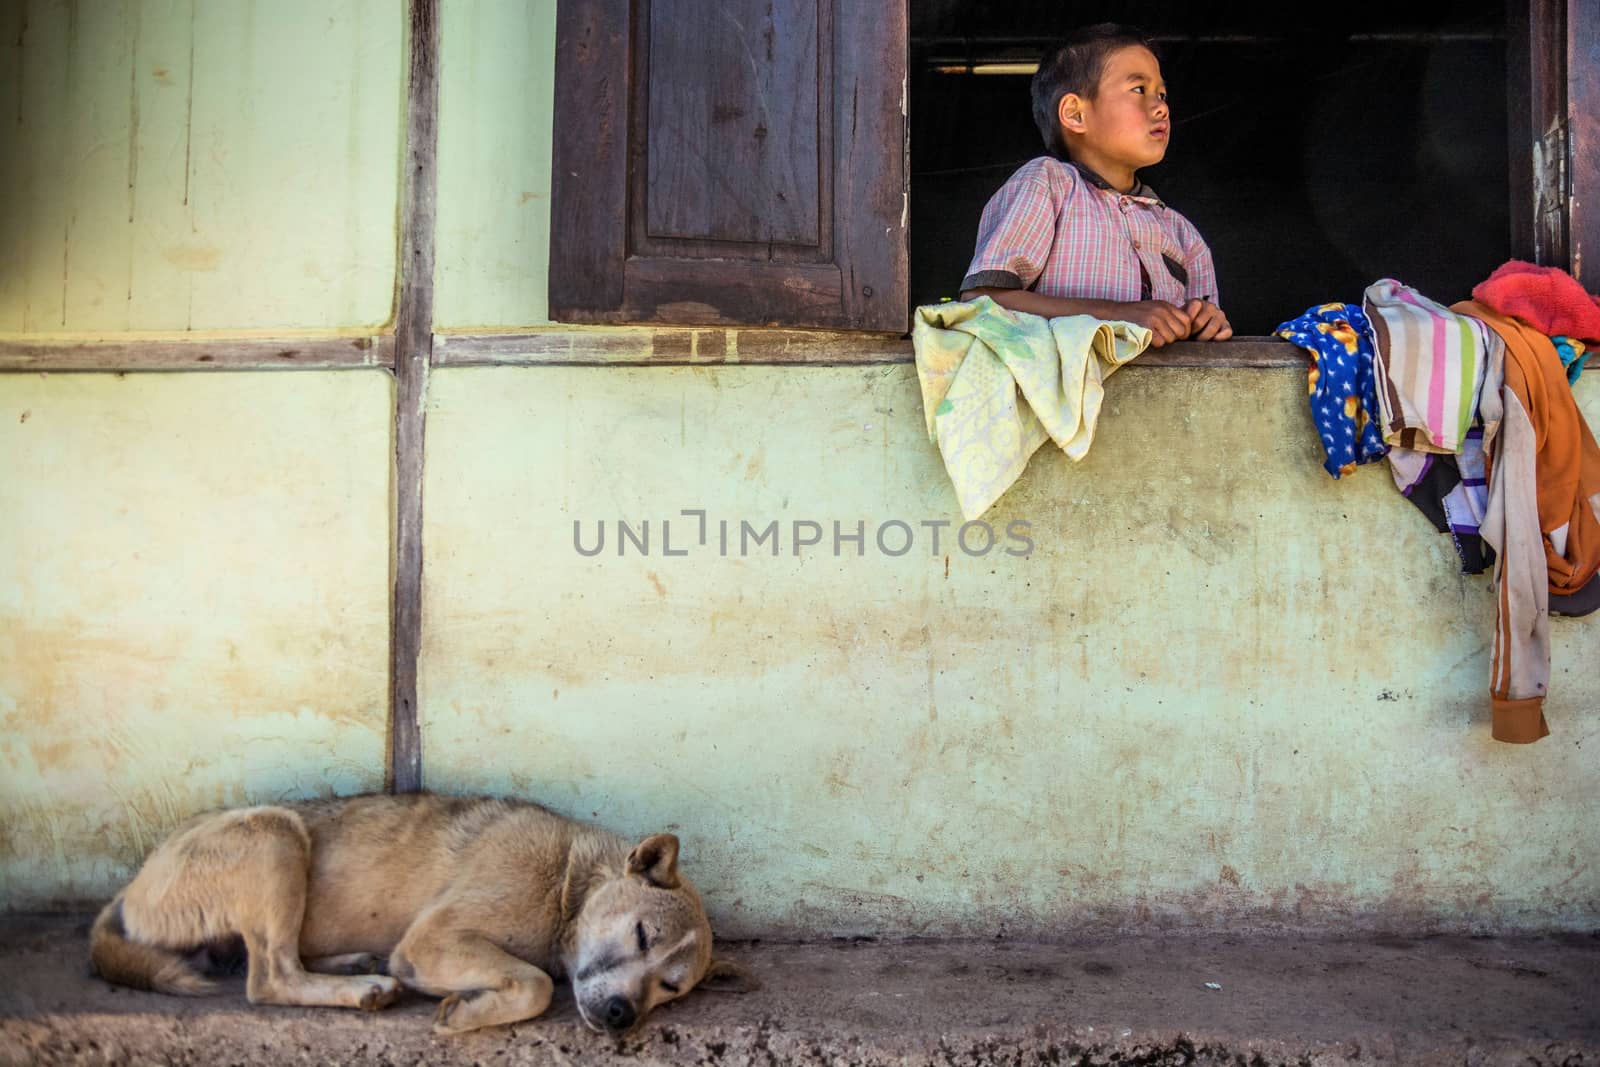 The Peopls of Myanmar by kargoo